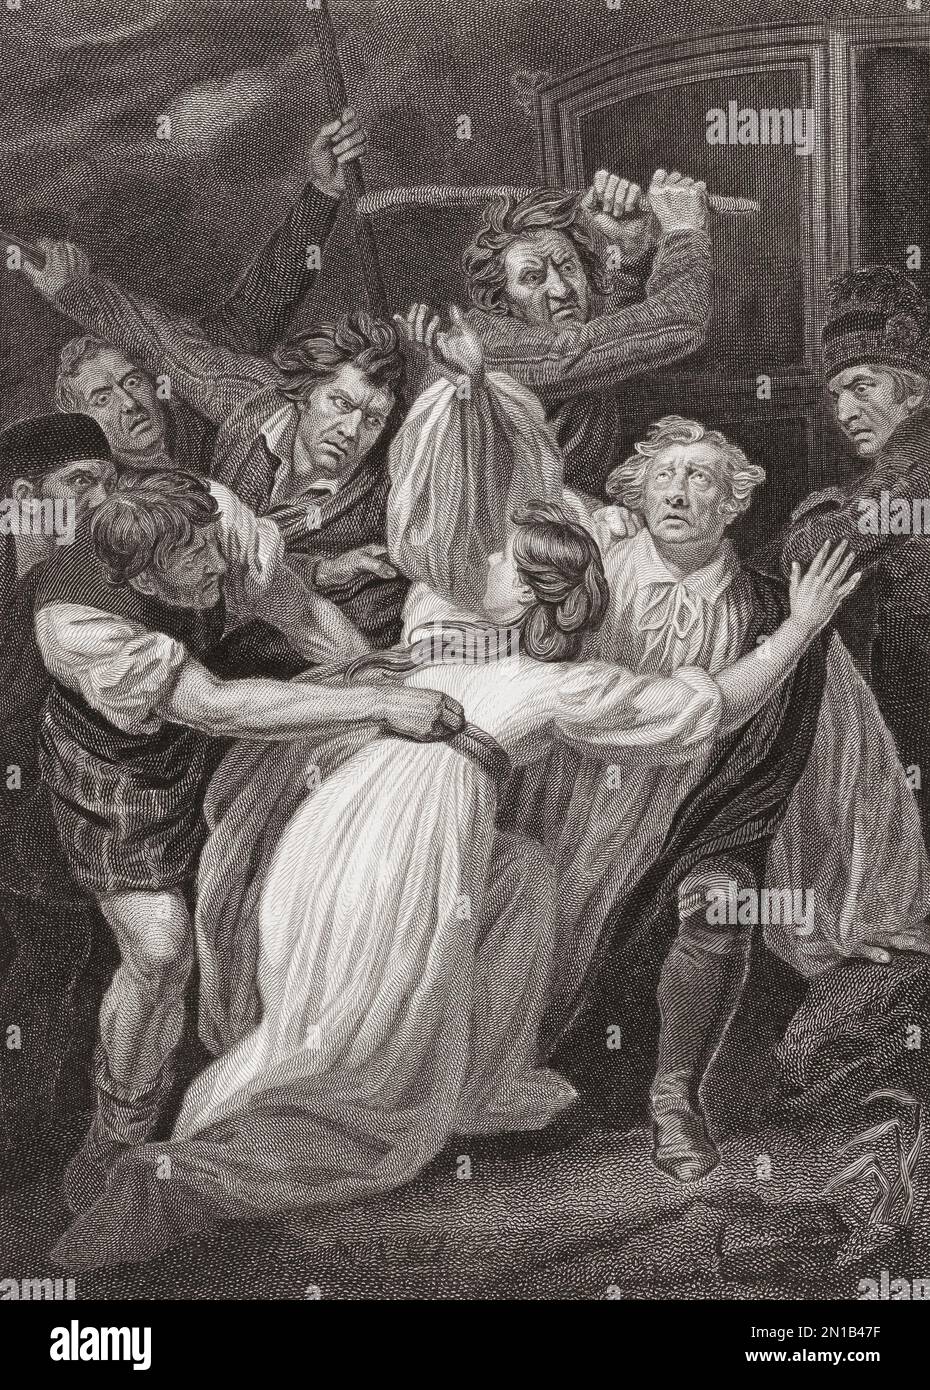 Der Mord an Erzbischof Sharp durch militante Covenanters. James Sharp, 1613-1679. Schottischer Presbyterianischer Minister und Erzbischof von St. Andrews. Nach einem Aufdruck, der ursprünglich in der historischen Galerie von Robert Bowyer gezeigt wurde und zwischen 1793 und 1806 veröffentlicht wurde. Stockfoto